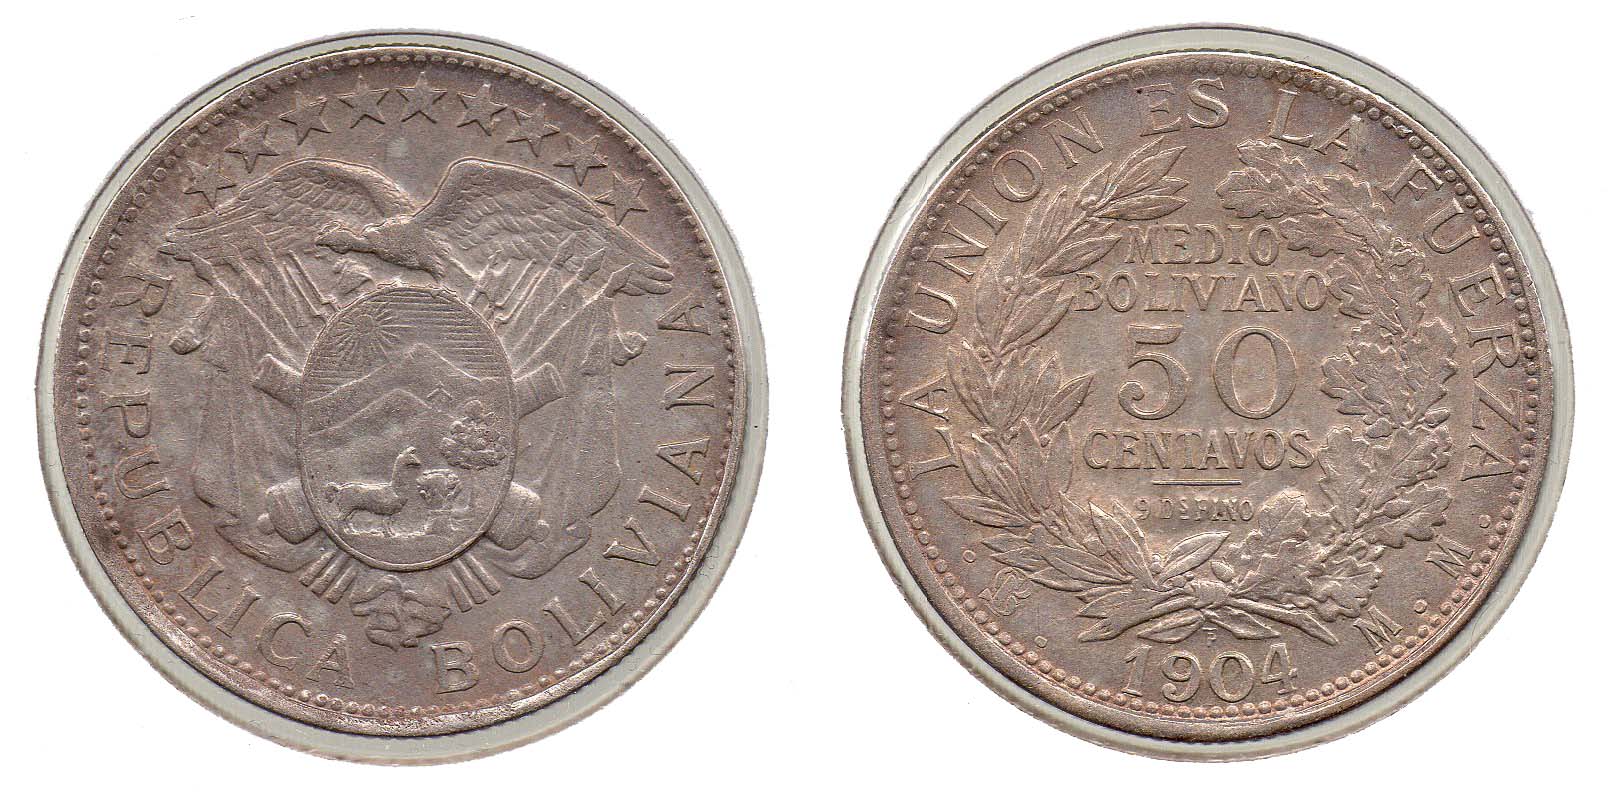 Bolivia - 50 Centavos - 1904 PTS MM.jpg